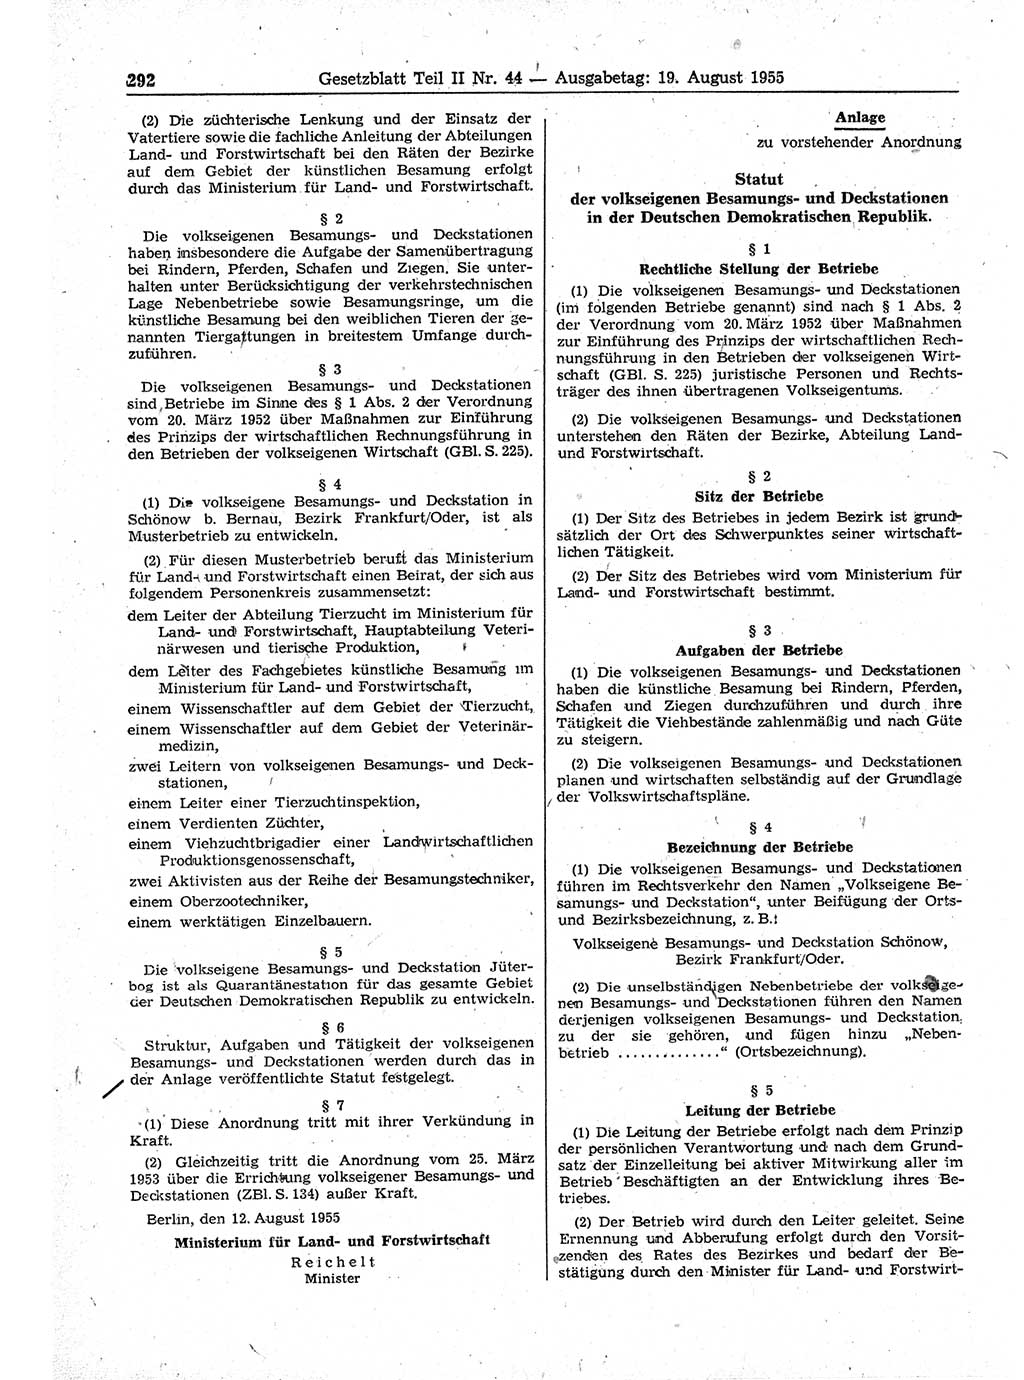 Gesetzblatt (GBl.) der Deutschen Demokratischen Republik (DDR) Teil ⅠⅠ 1955, Seite 292 (GBl. DDR ⅠⅠ 1955, S. 292)